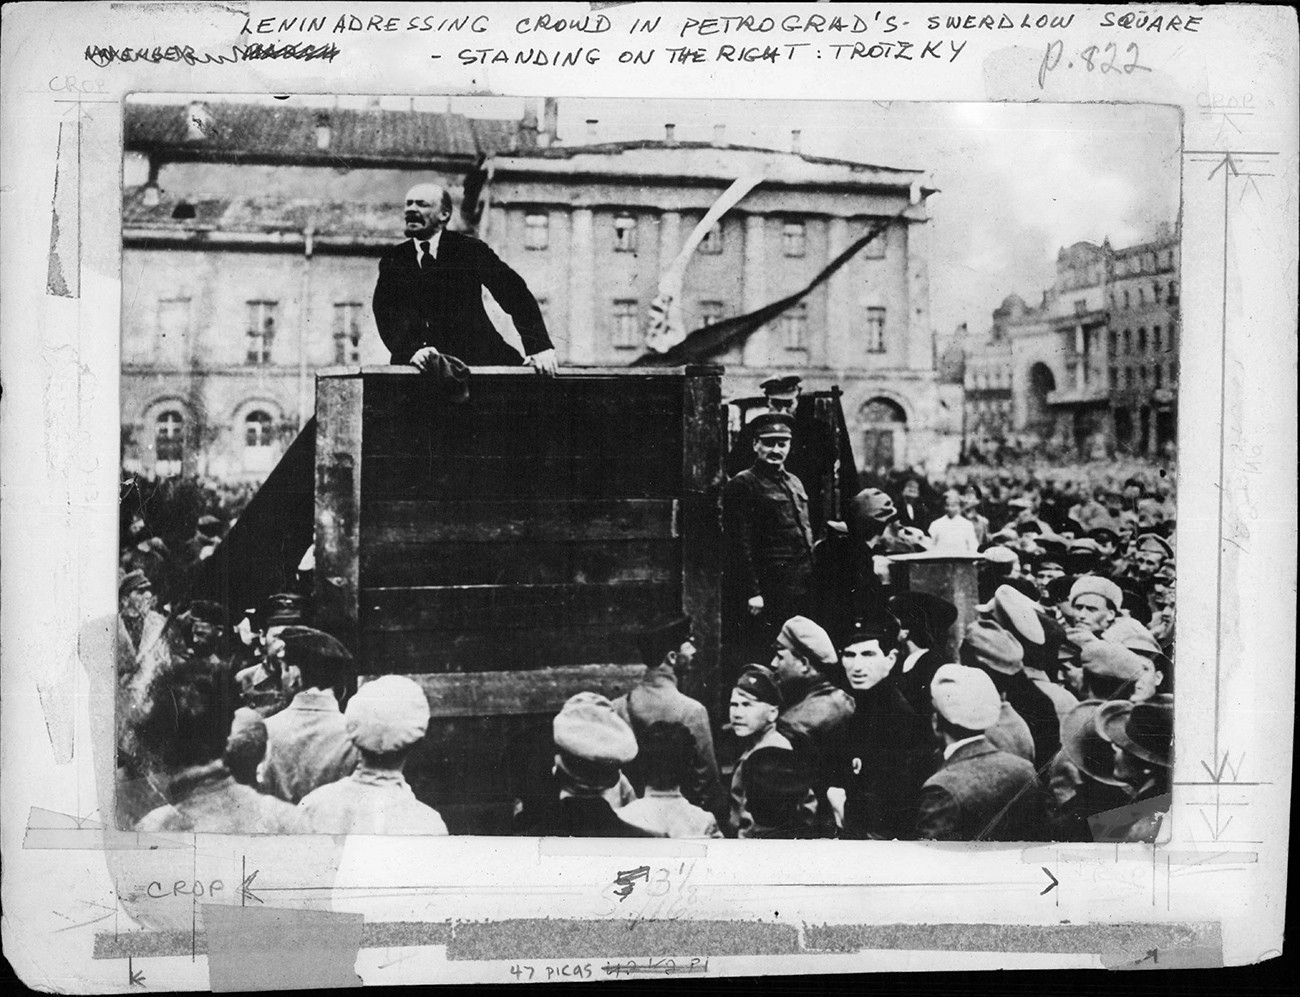 Lenin nagovarja množice na Sverdlovskem trgu v Petrogradu, 1919